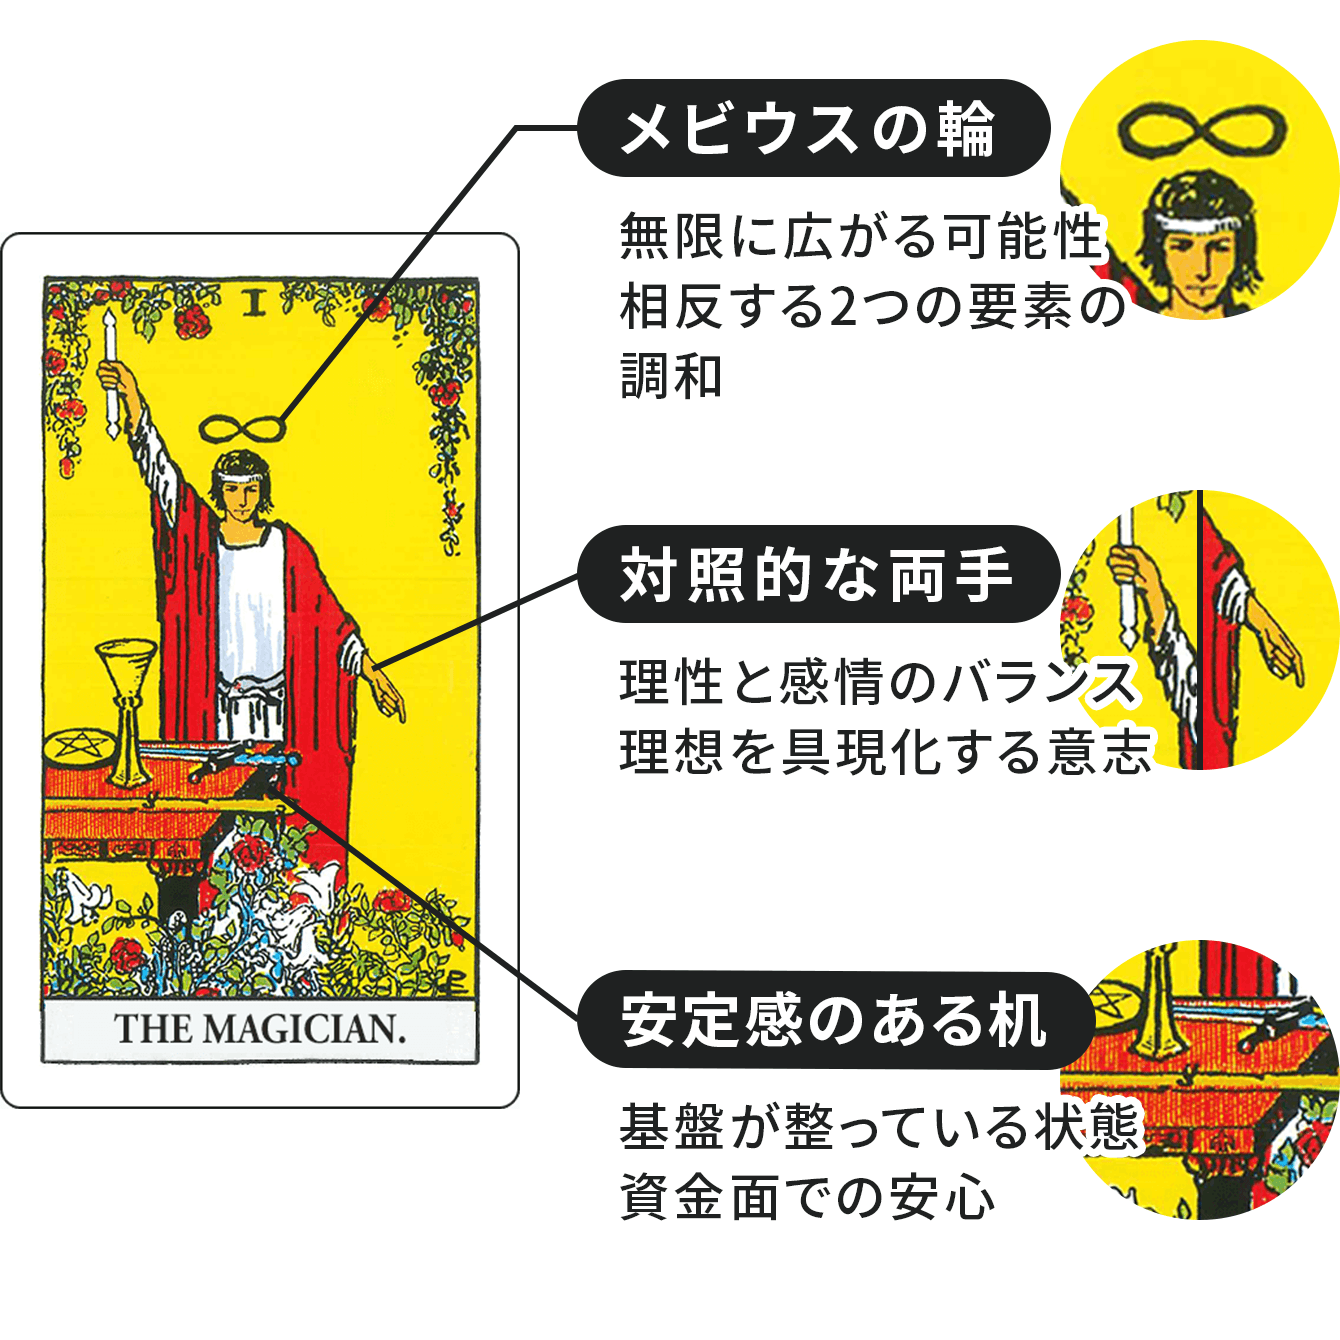 魔術師に描かれたシンボルの解釈